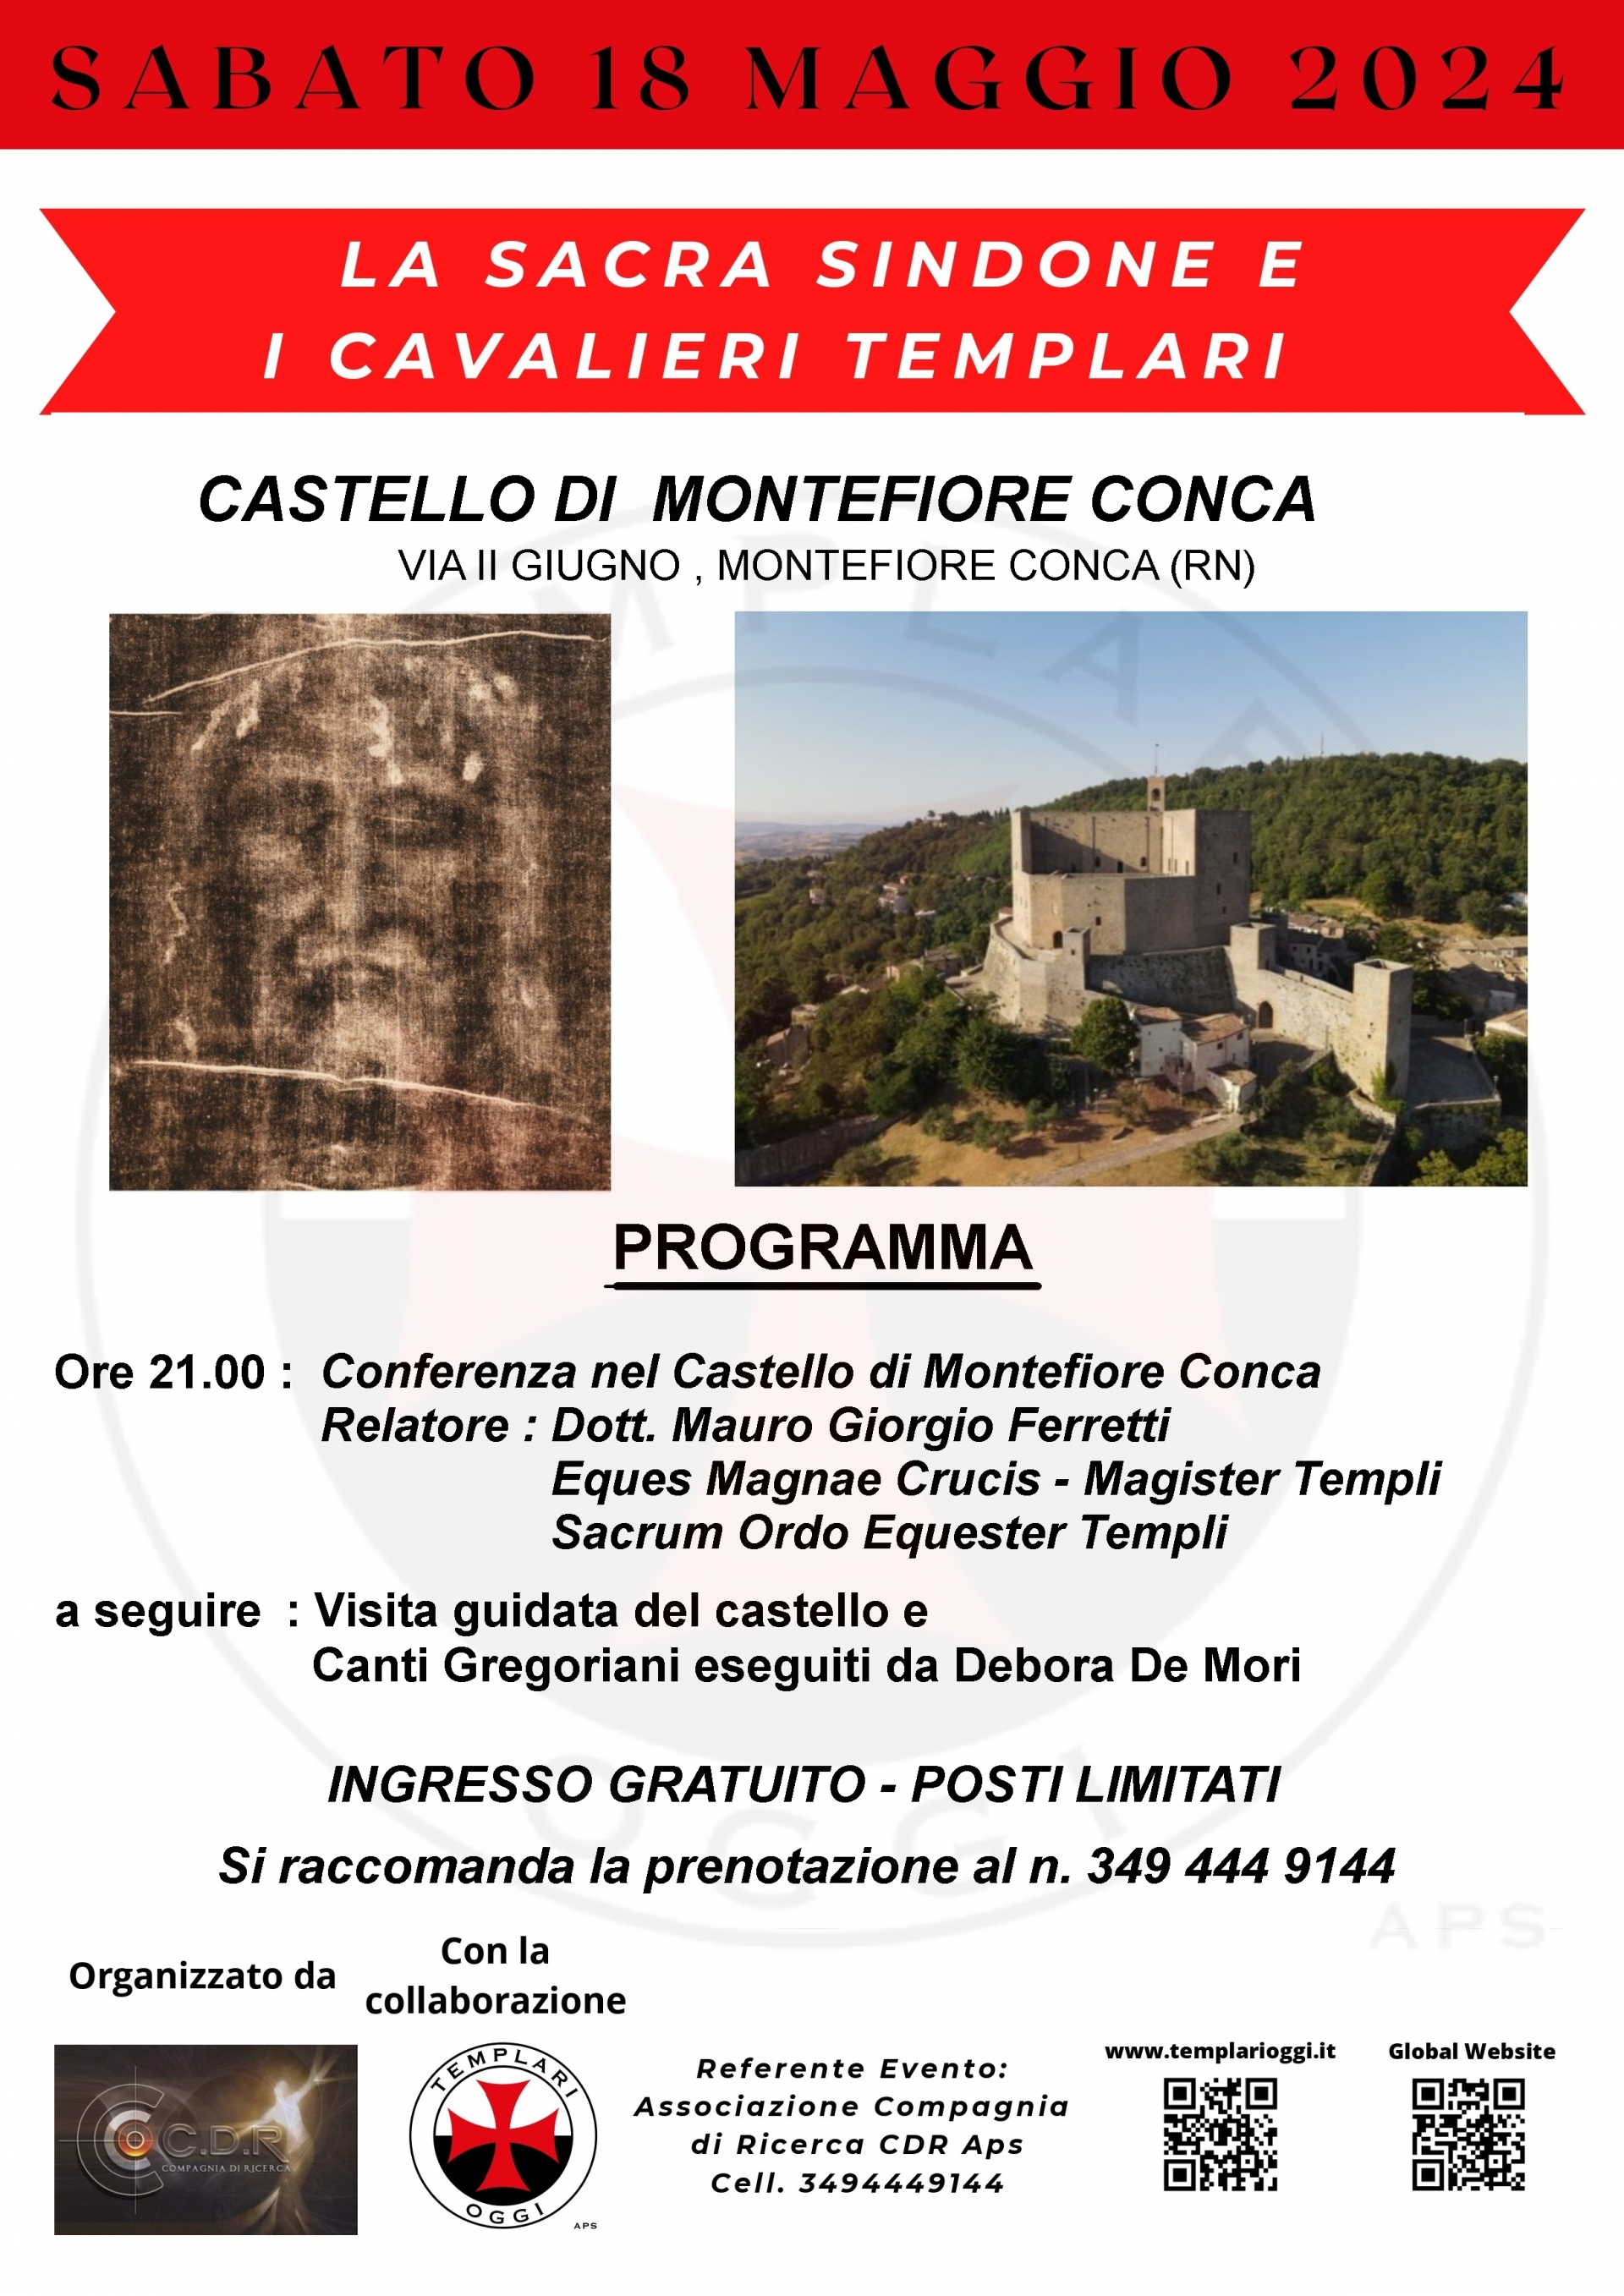 LA SACRA SINDONE E I CAVALIERI TEMPLARI Foto(s) von castello di Montefiore Conca